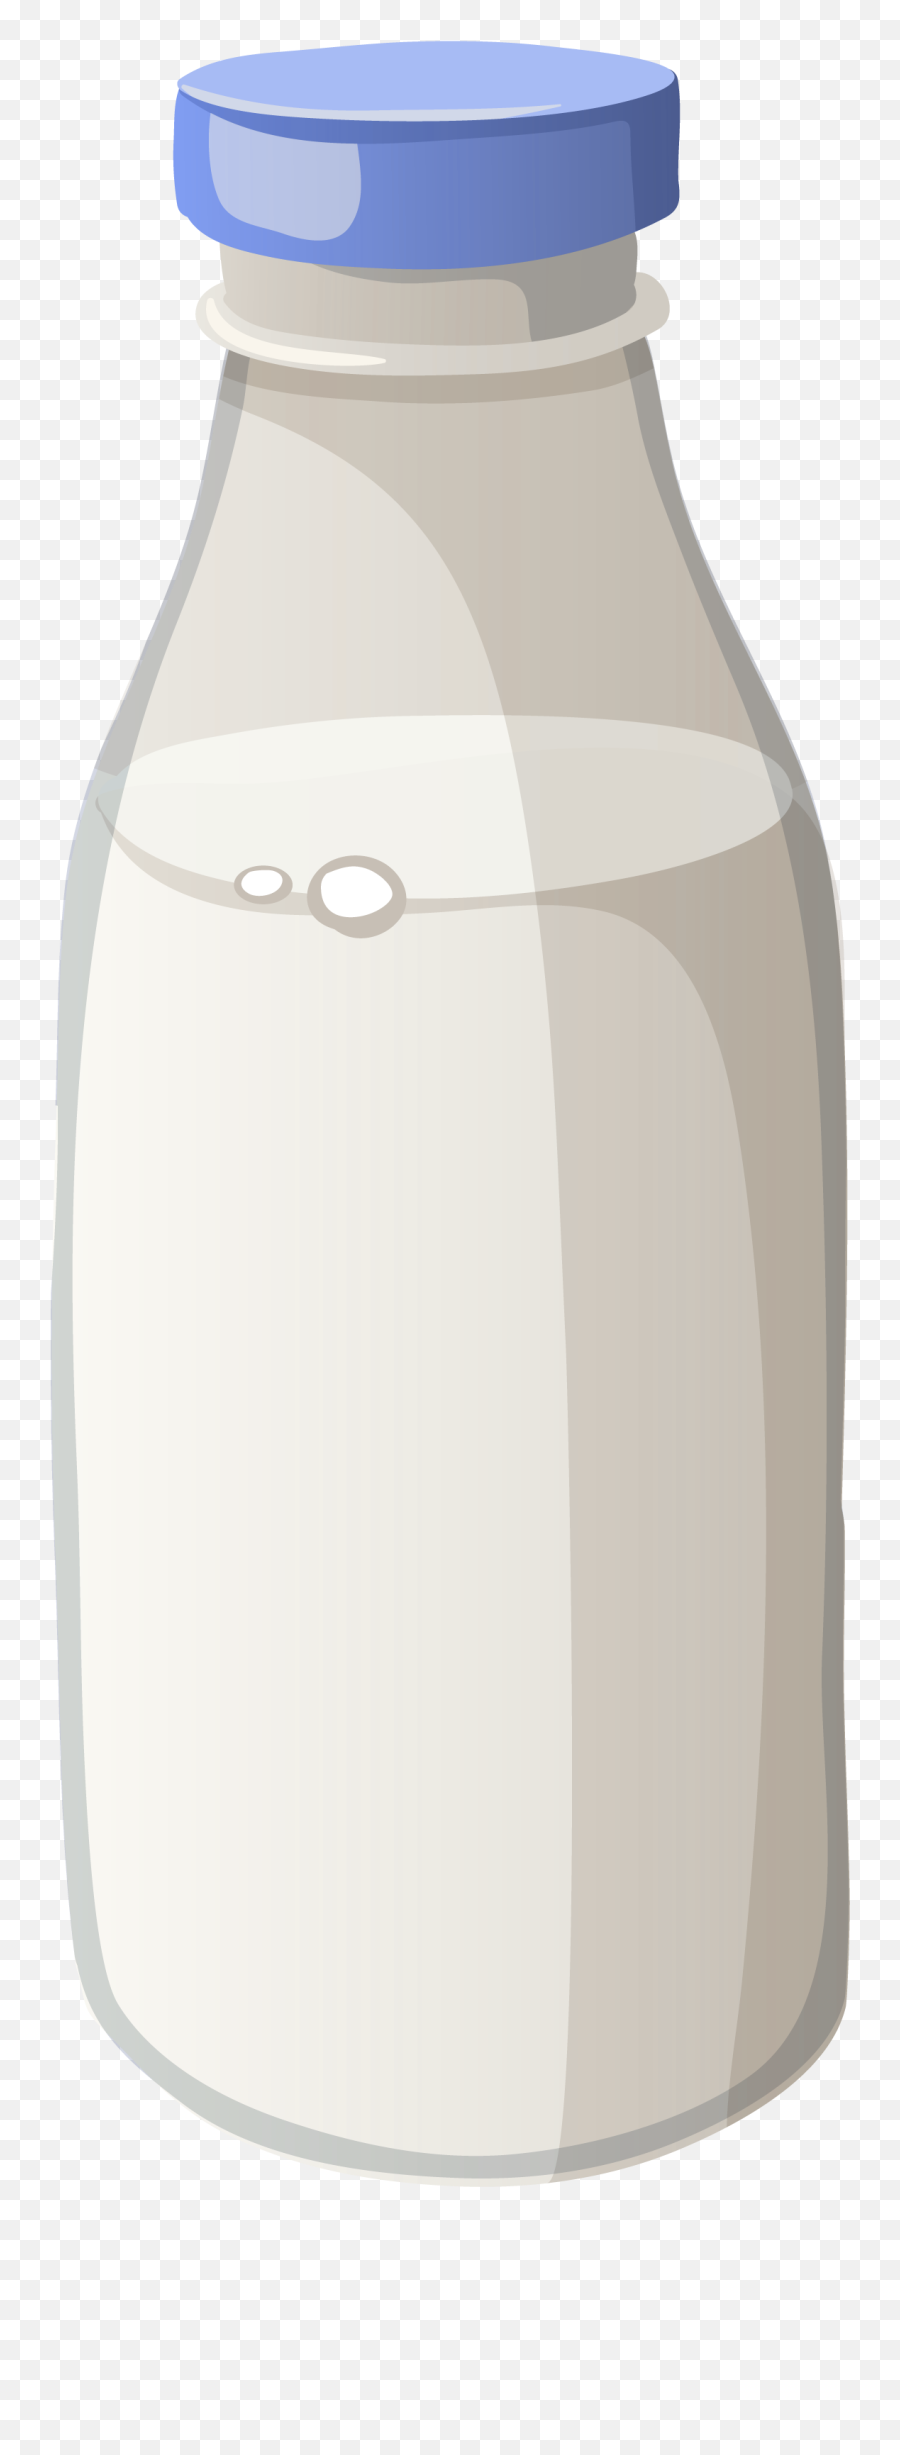 Milk Bottle Png Image - Vase,Milk Bottle Png